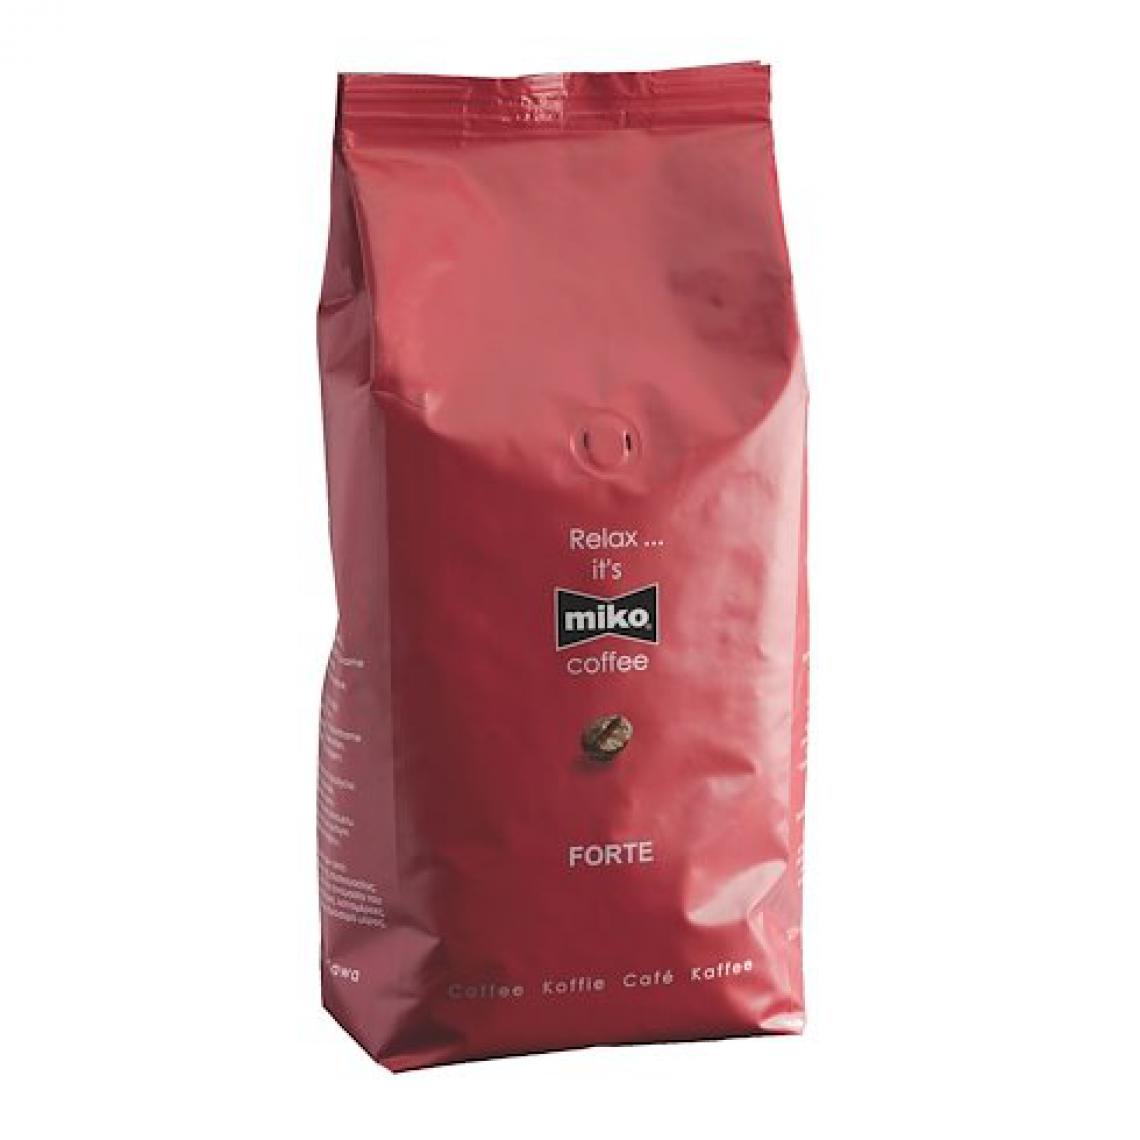 Miko - Café Miko Forté grain - paquet de 1 kg - Dosette café